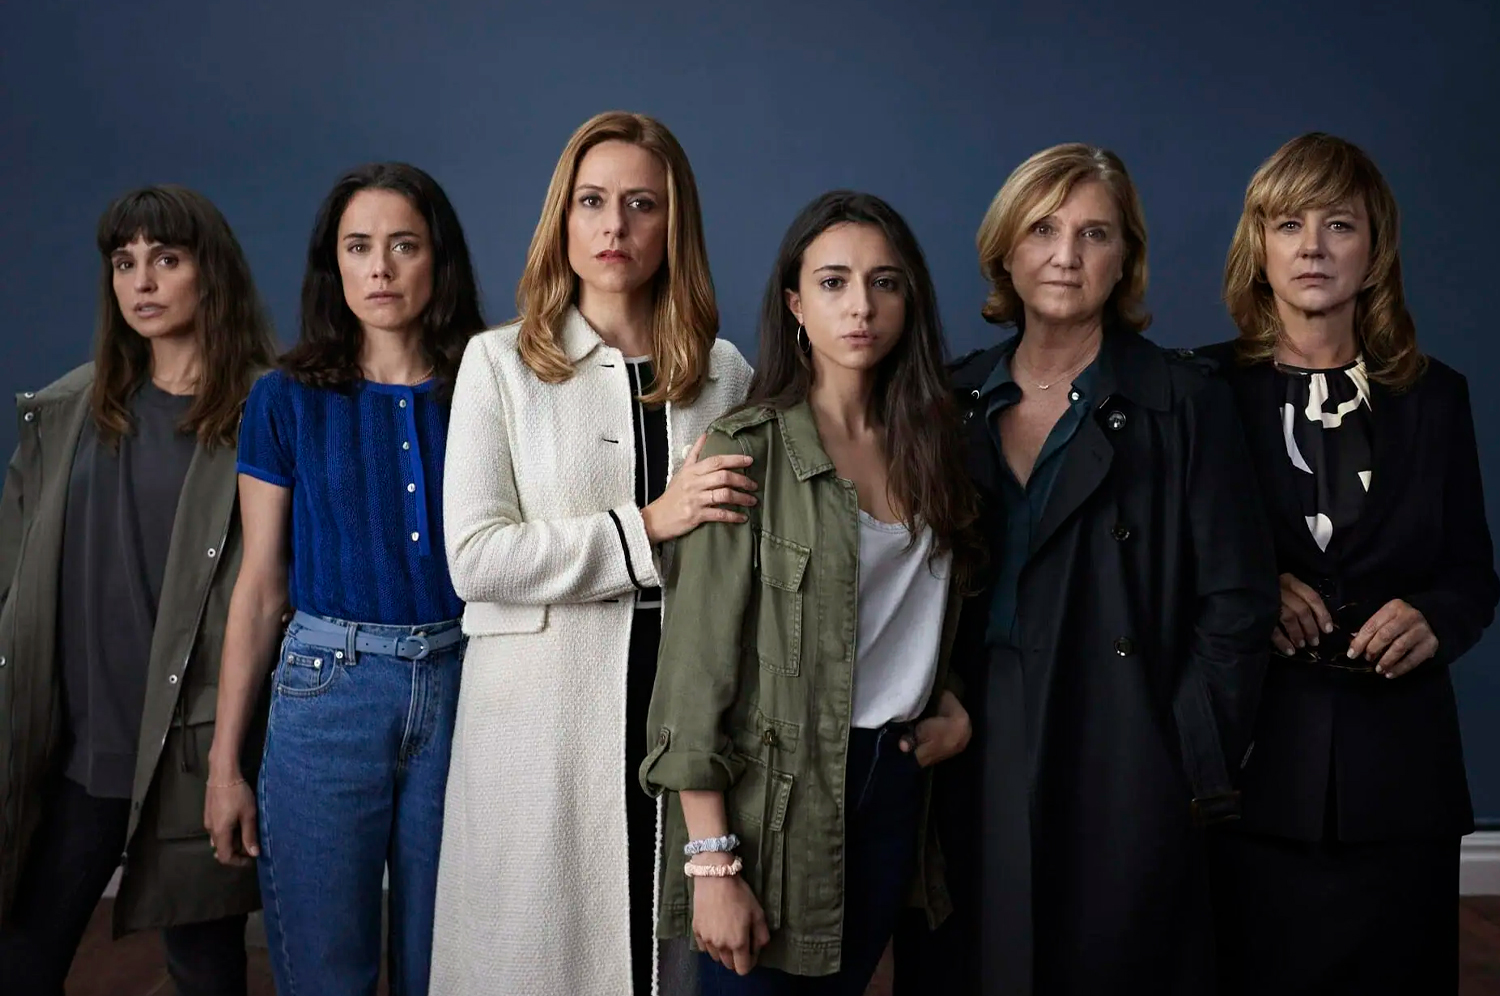 Intimidade: nova série espanhola sobre escândalo político estreou na Netflix e tem tudo pra ser um sucesso